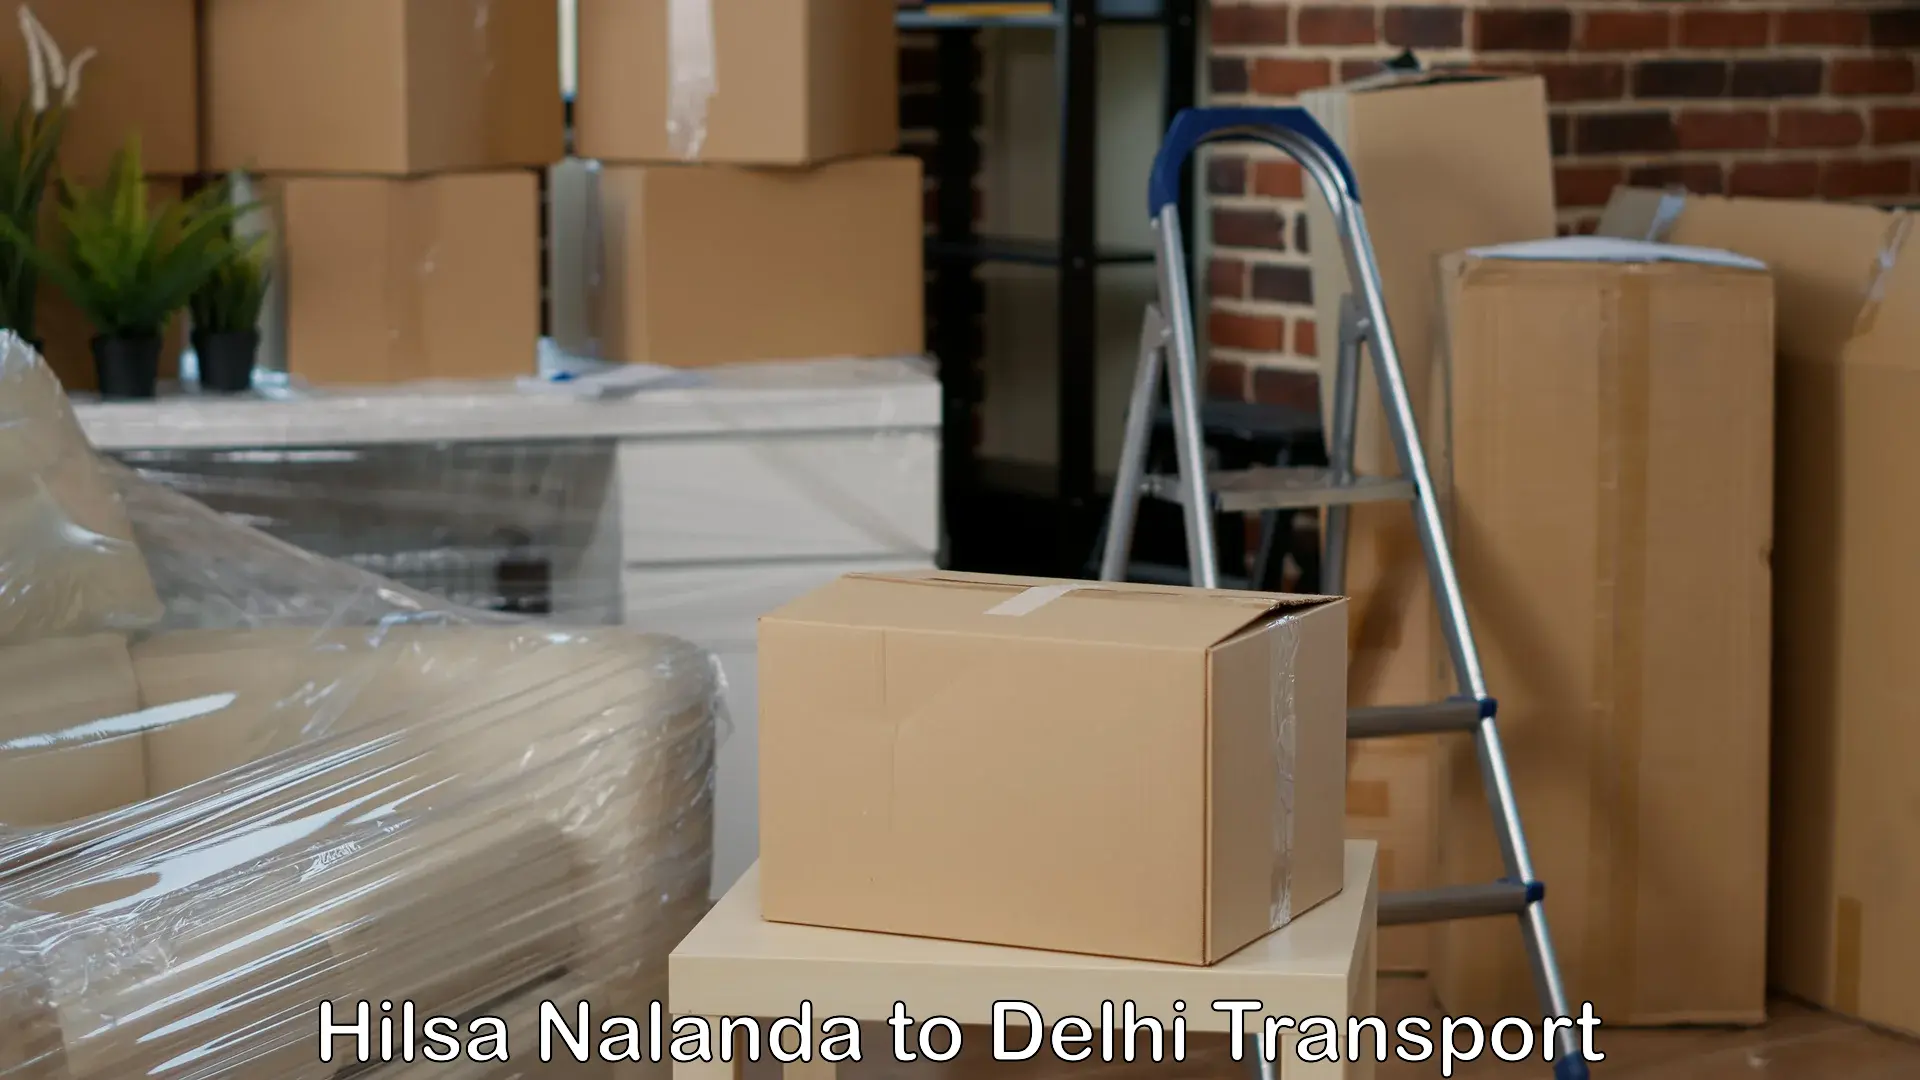 Road transport services Hilsa Nalanda to Delhi